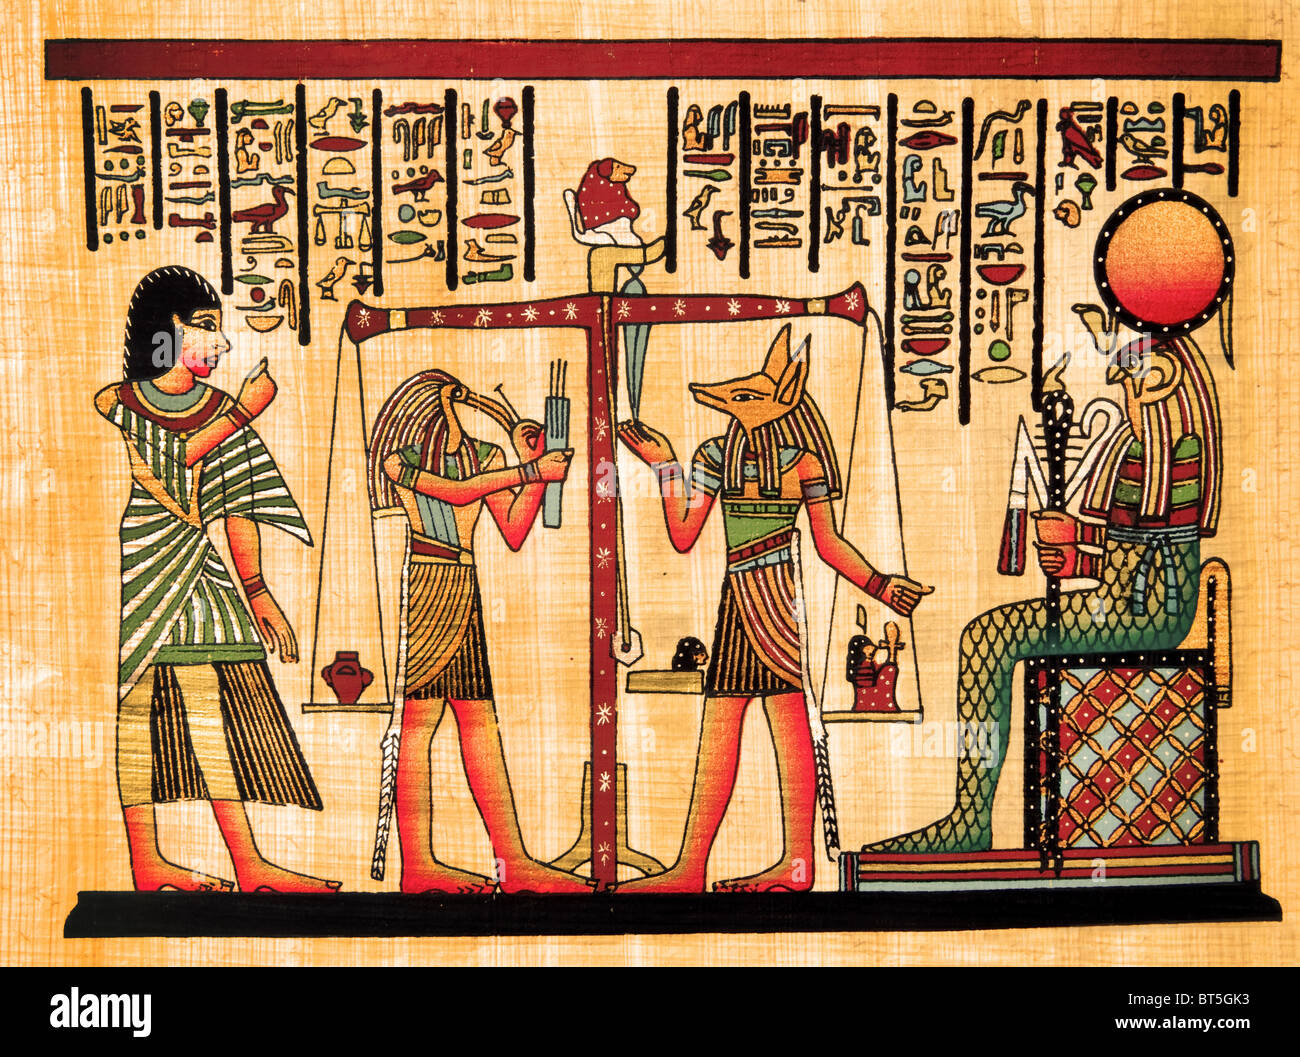 Papiro egiziano immagini e fotografie stock ad alta risoluzione - Alamy